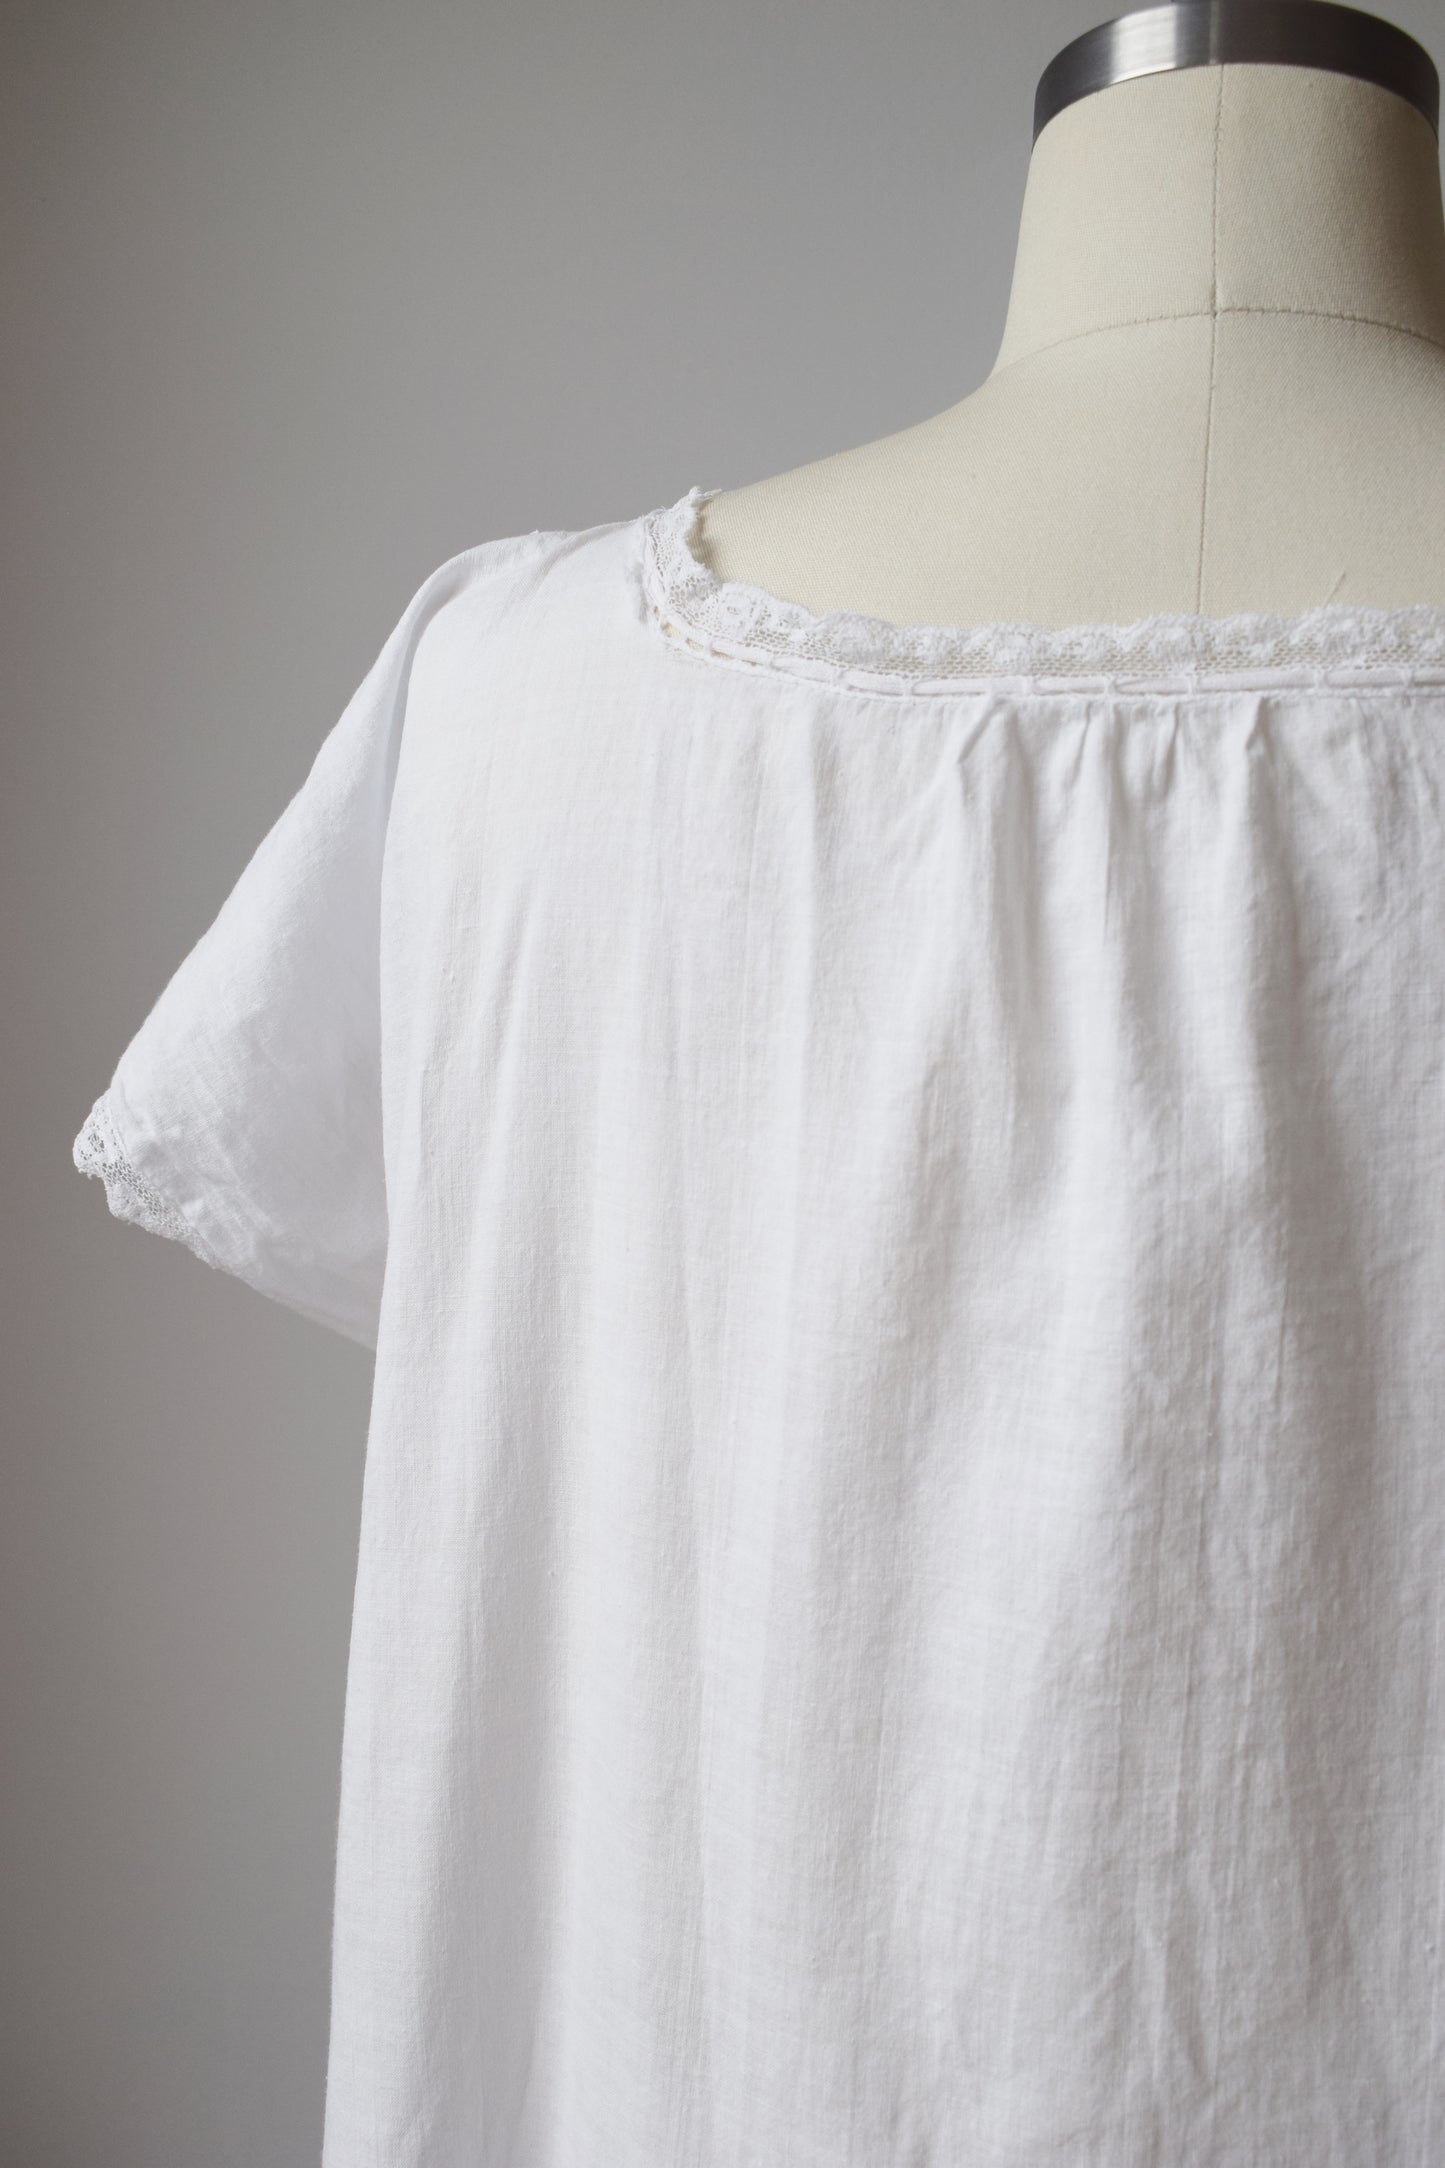 Antique Cotton and Lace Nap Dress | OS